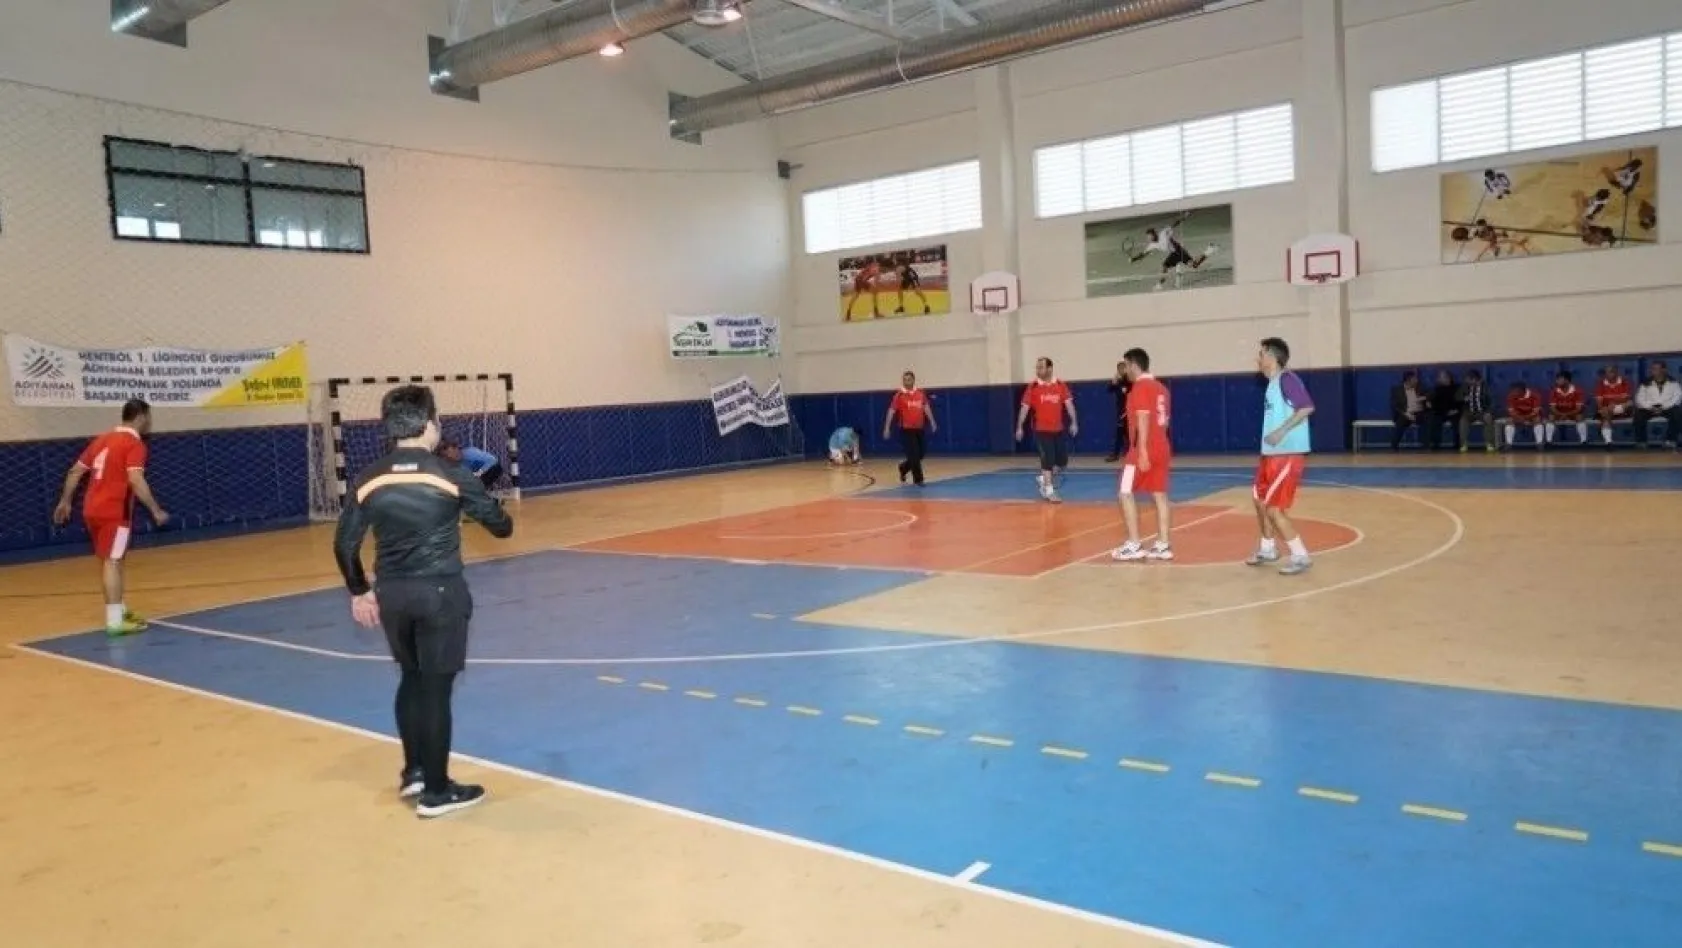 Adıyaman Belediyesi Birimlerarası Futsal Turnuvası başladı
